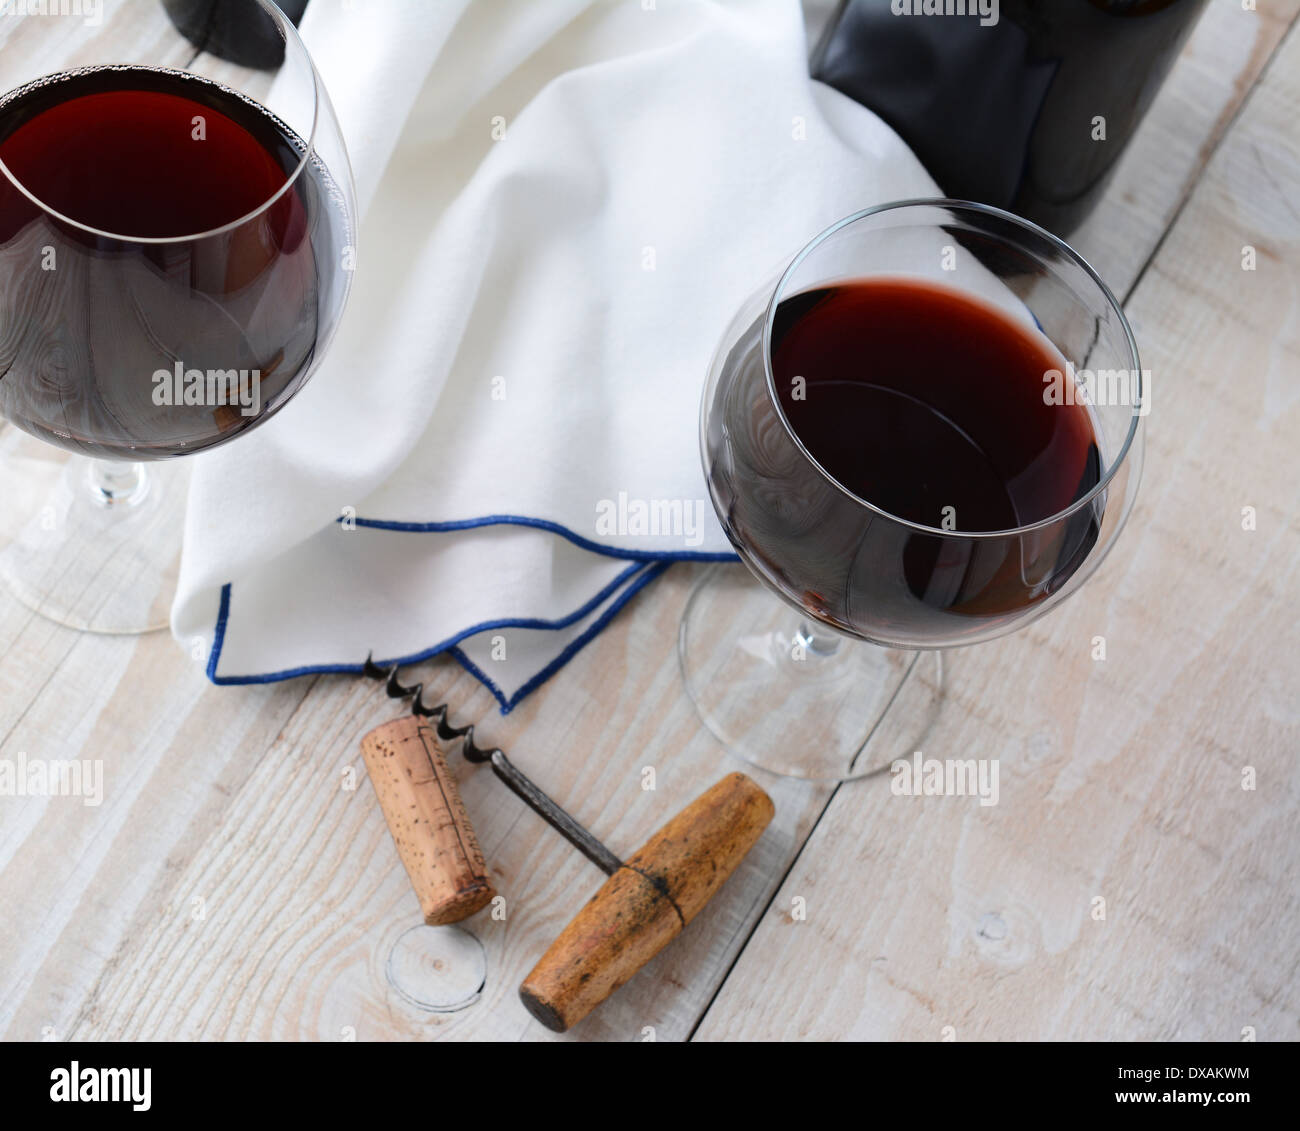 Deux wineglasses de vin rouge sur une table en bois avec un tire-bouchon. Format horizontal tourné d'un angle élevé. Banque D'Images